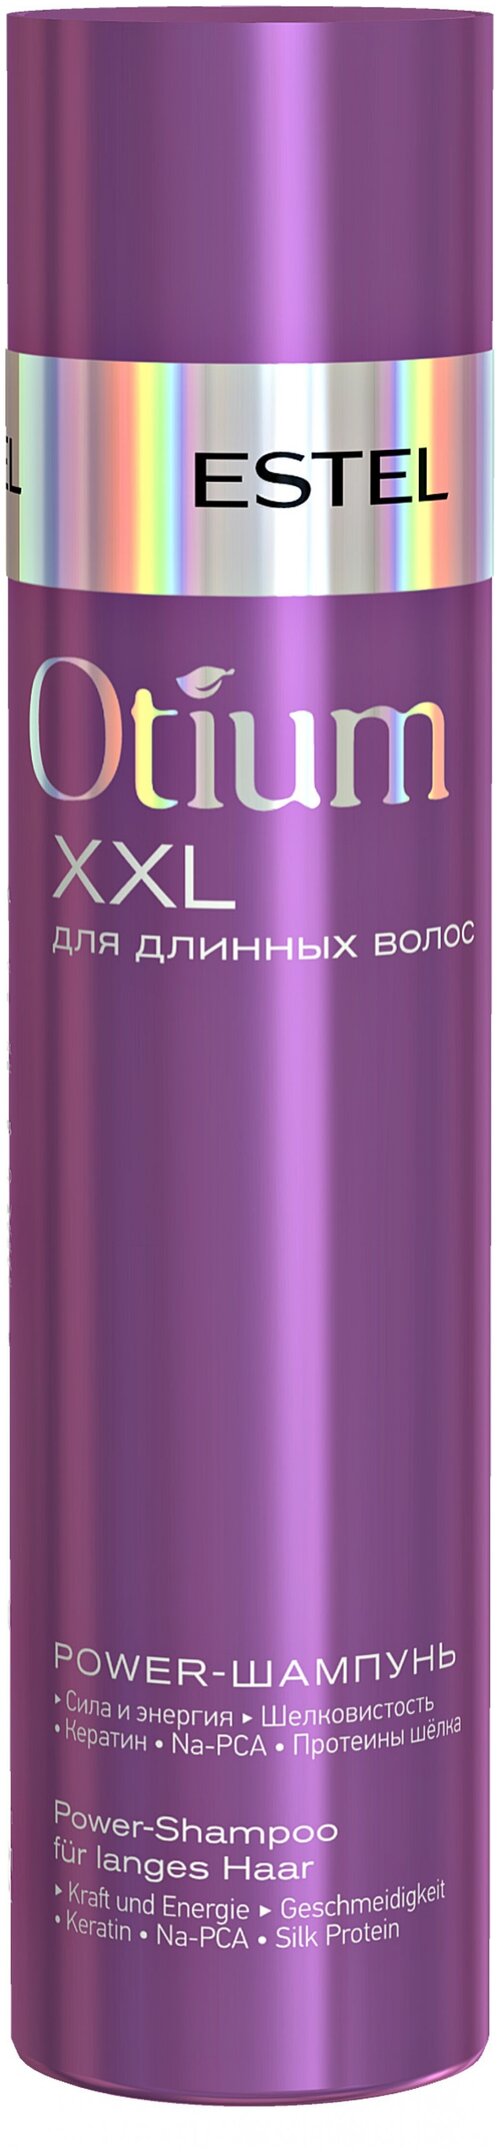 ESTEL шампунь Otium XXL для длинных волос, 250 мл